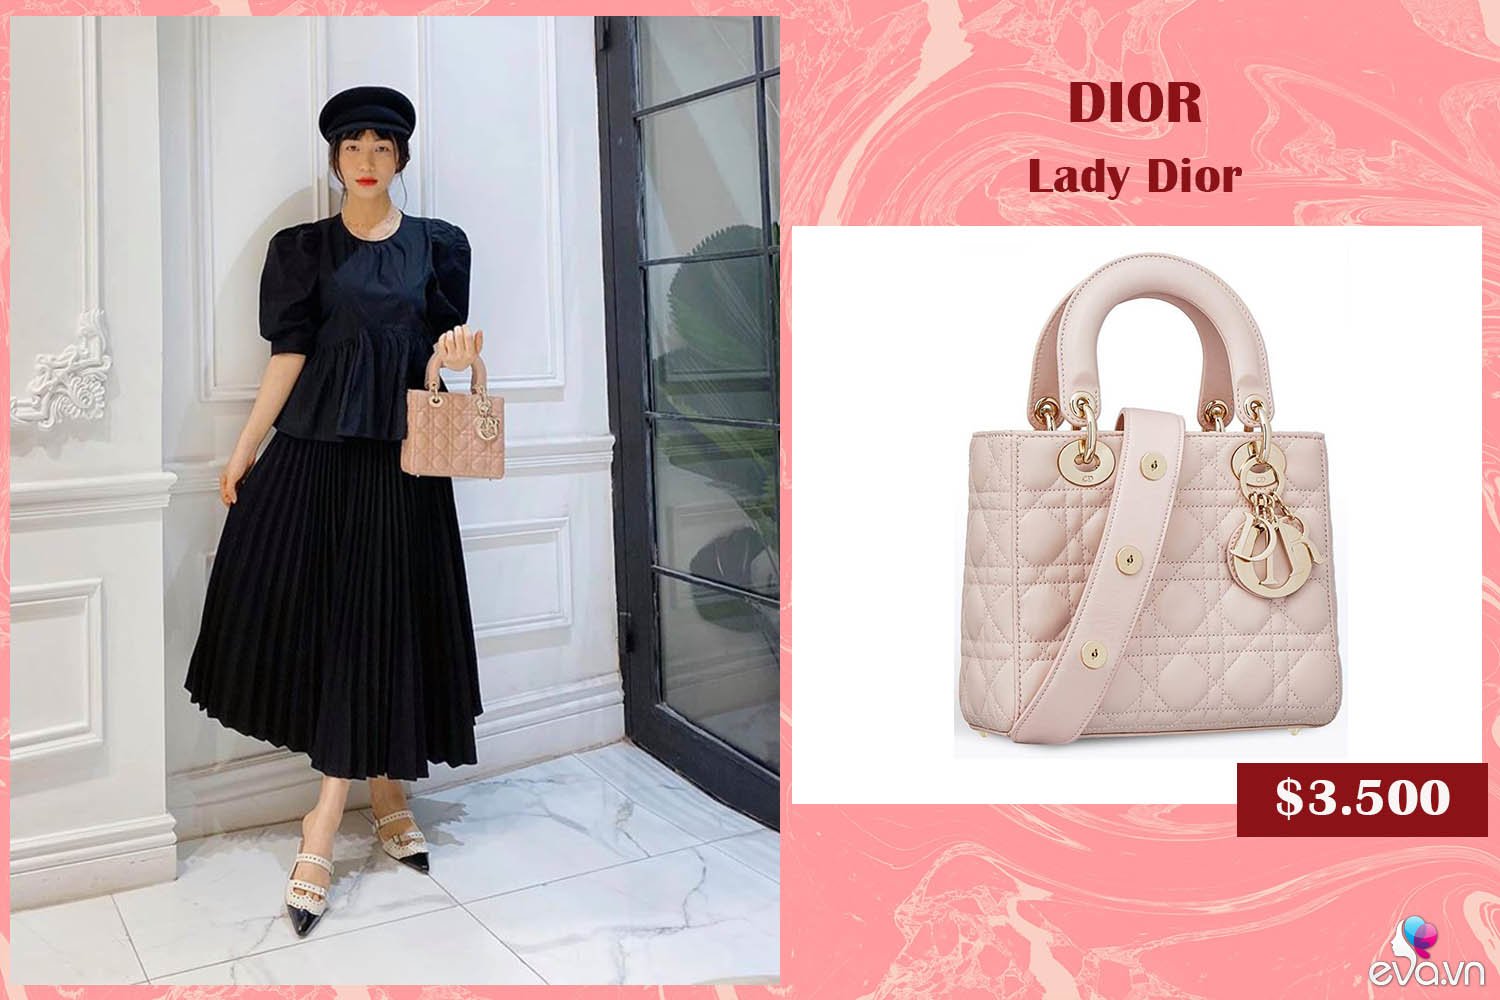  Khoe dáng trong cây đồ đen toàn tập và kín như bưng, Hòa Minzy vẫn lôi cuốn bao ánh nhìn nhờ vào chiếc túi kinh điển có giá thành hơn 100 triệu đồng của nhà mốt Dior. Với sắc hồng dịu dàng và thanh lịch của Lady Dior, nữ ca sĩ trông hệt một cô tiểu thư quyền quý. 